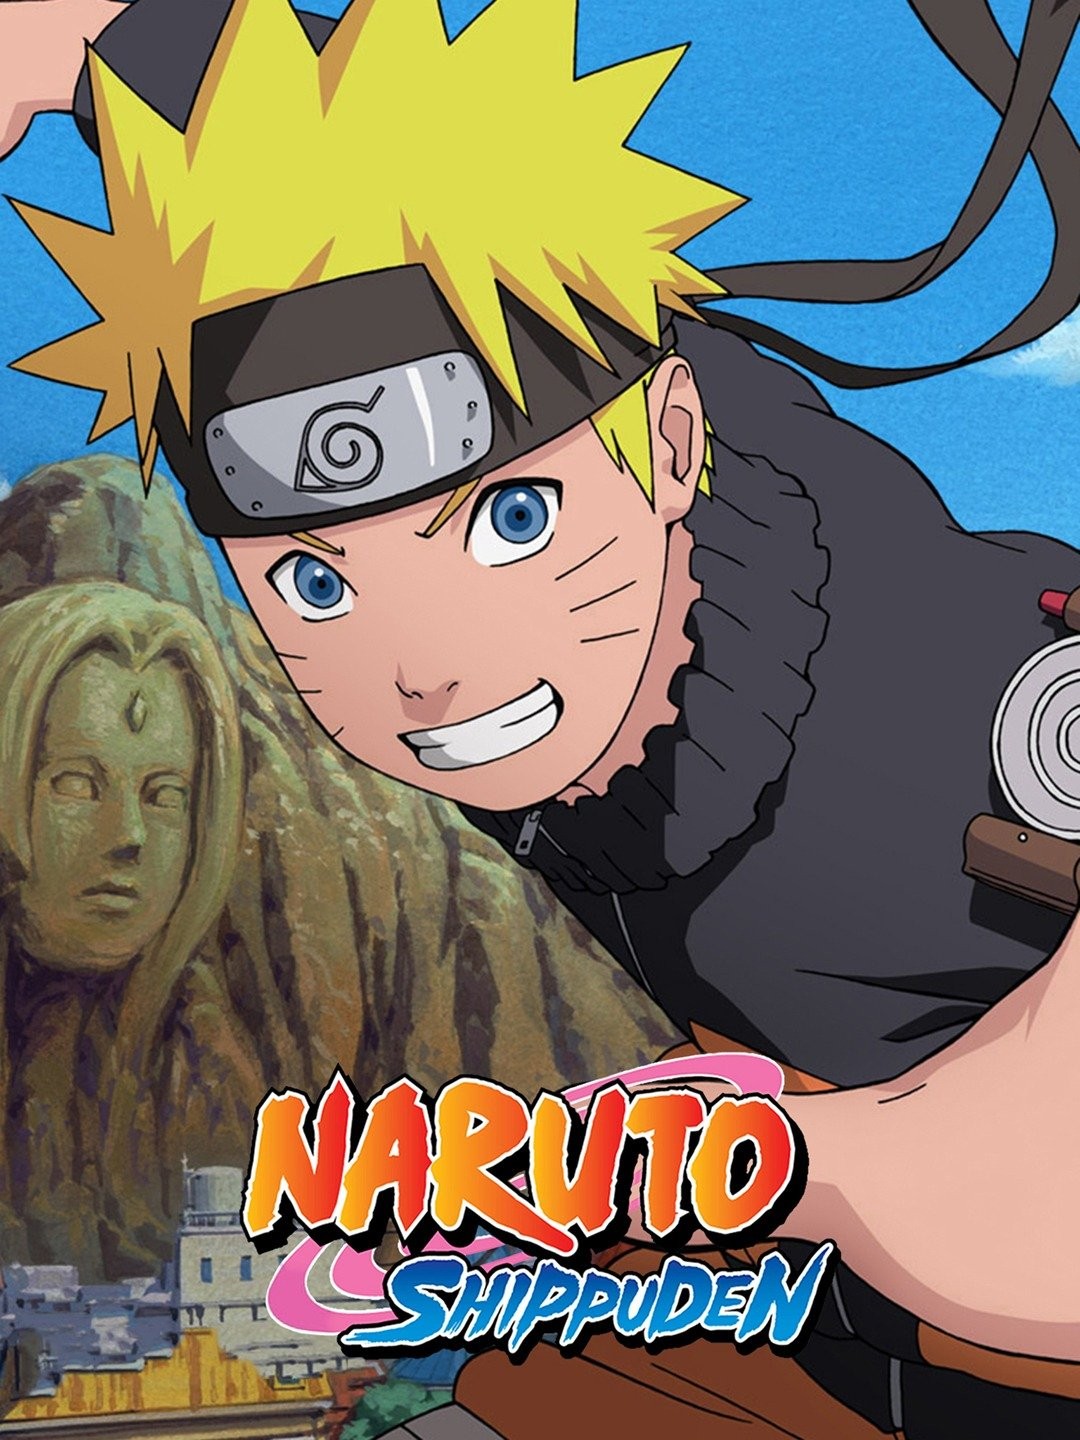 DVD Box - Naruto Shippuden - Segunda Temporada - Box 1 (5 Discos)